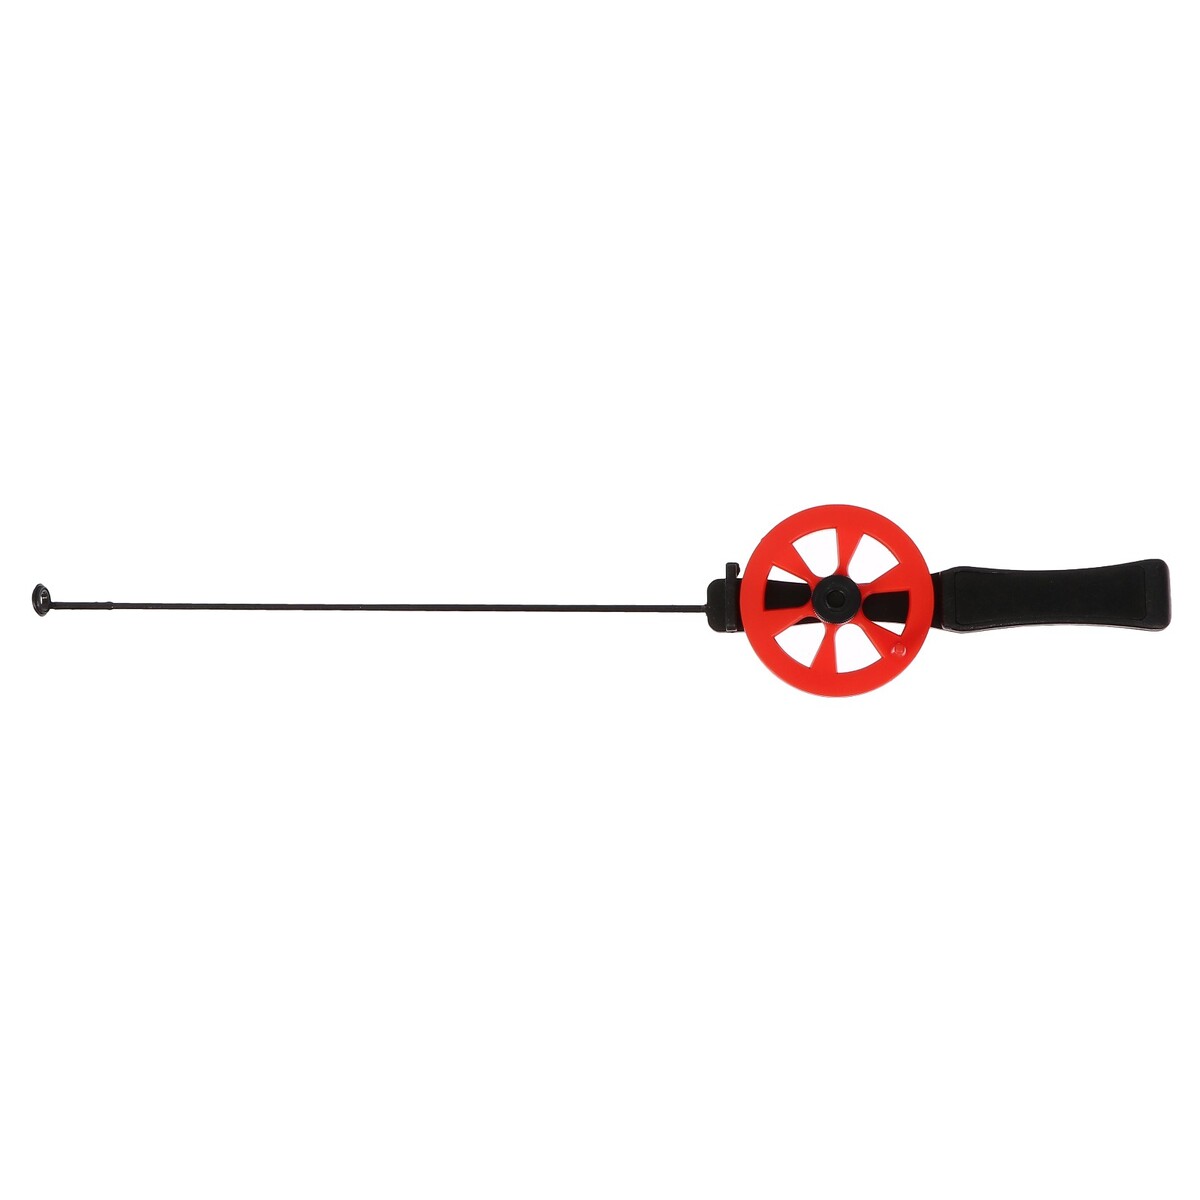 Удочка зимняя, ручка пластик, направляющая лески, красная, hfb-15 удочка зимняя ручка неопрен длина 33 см красный hfb 34